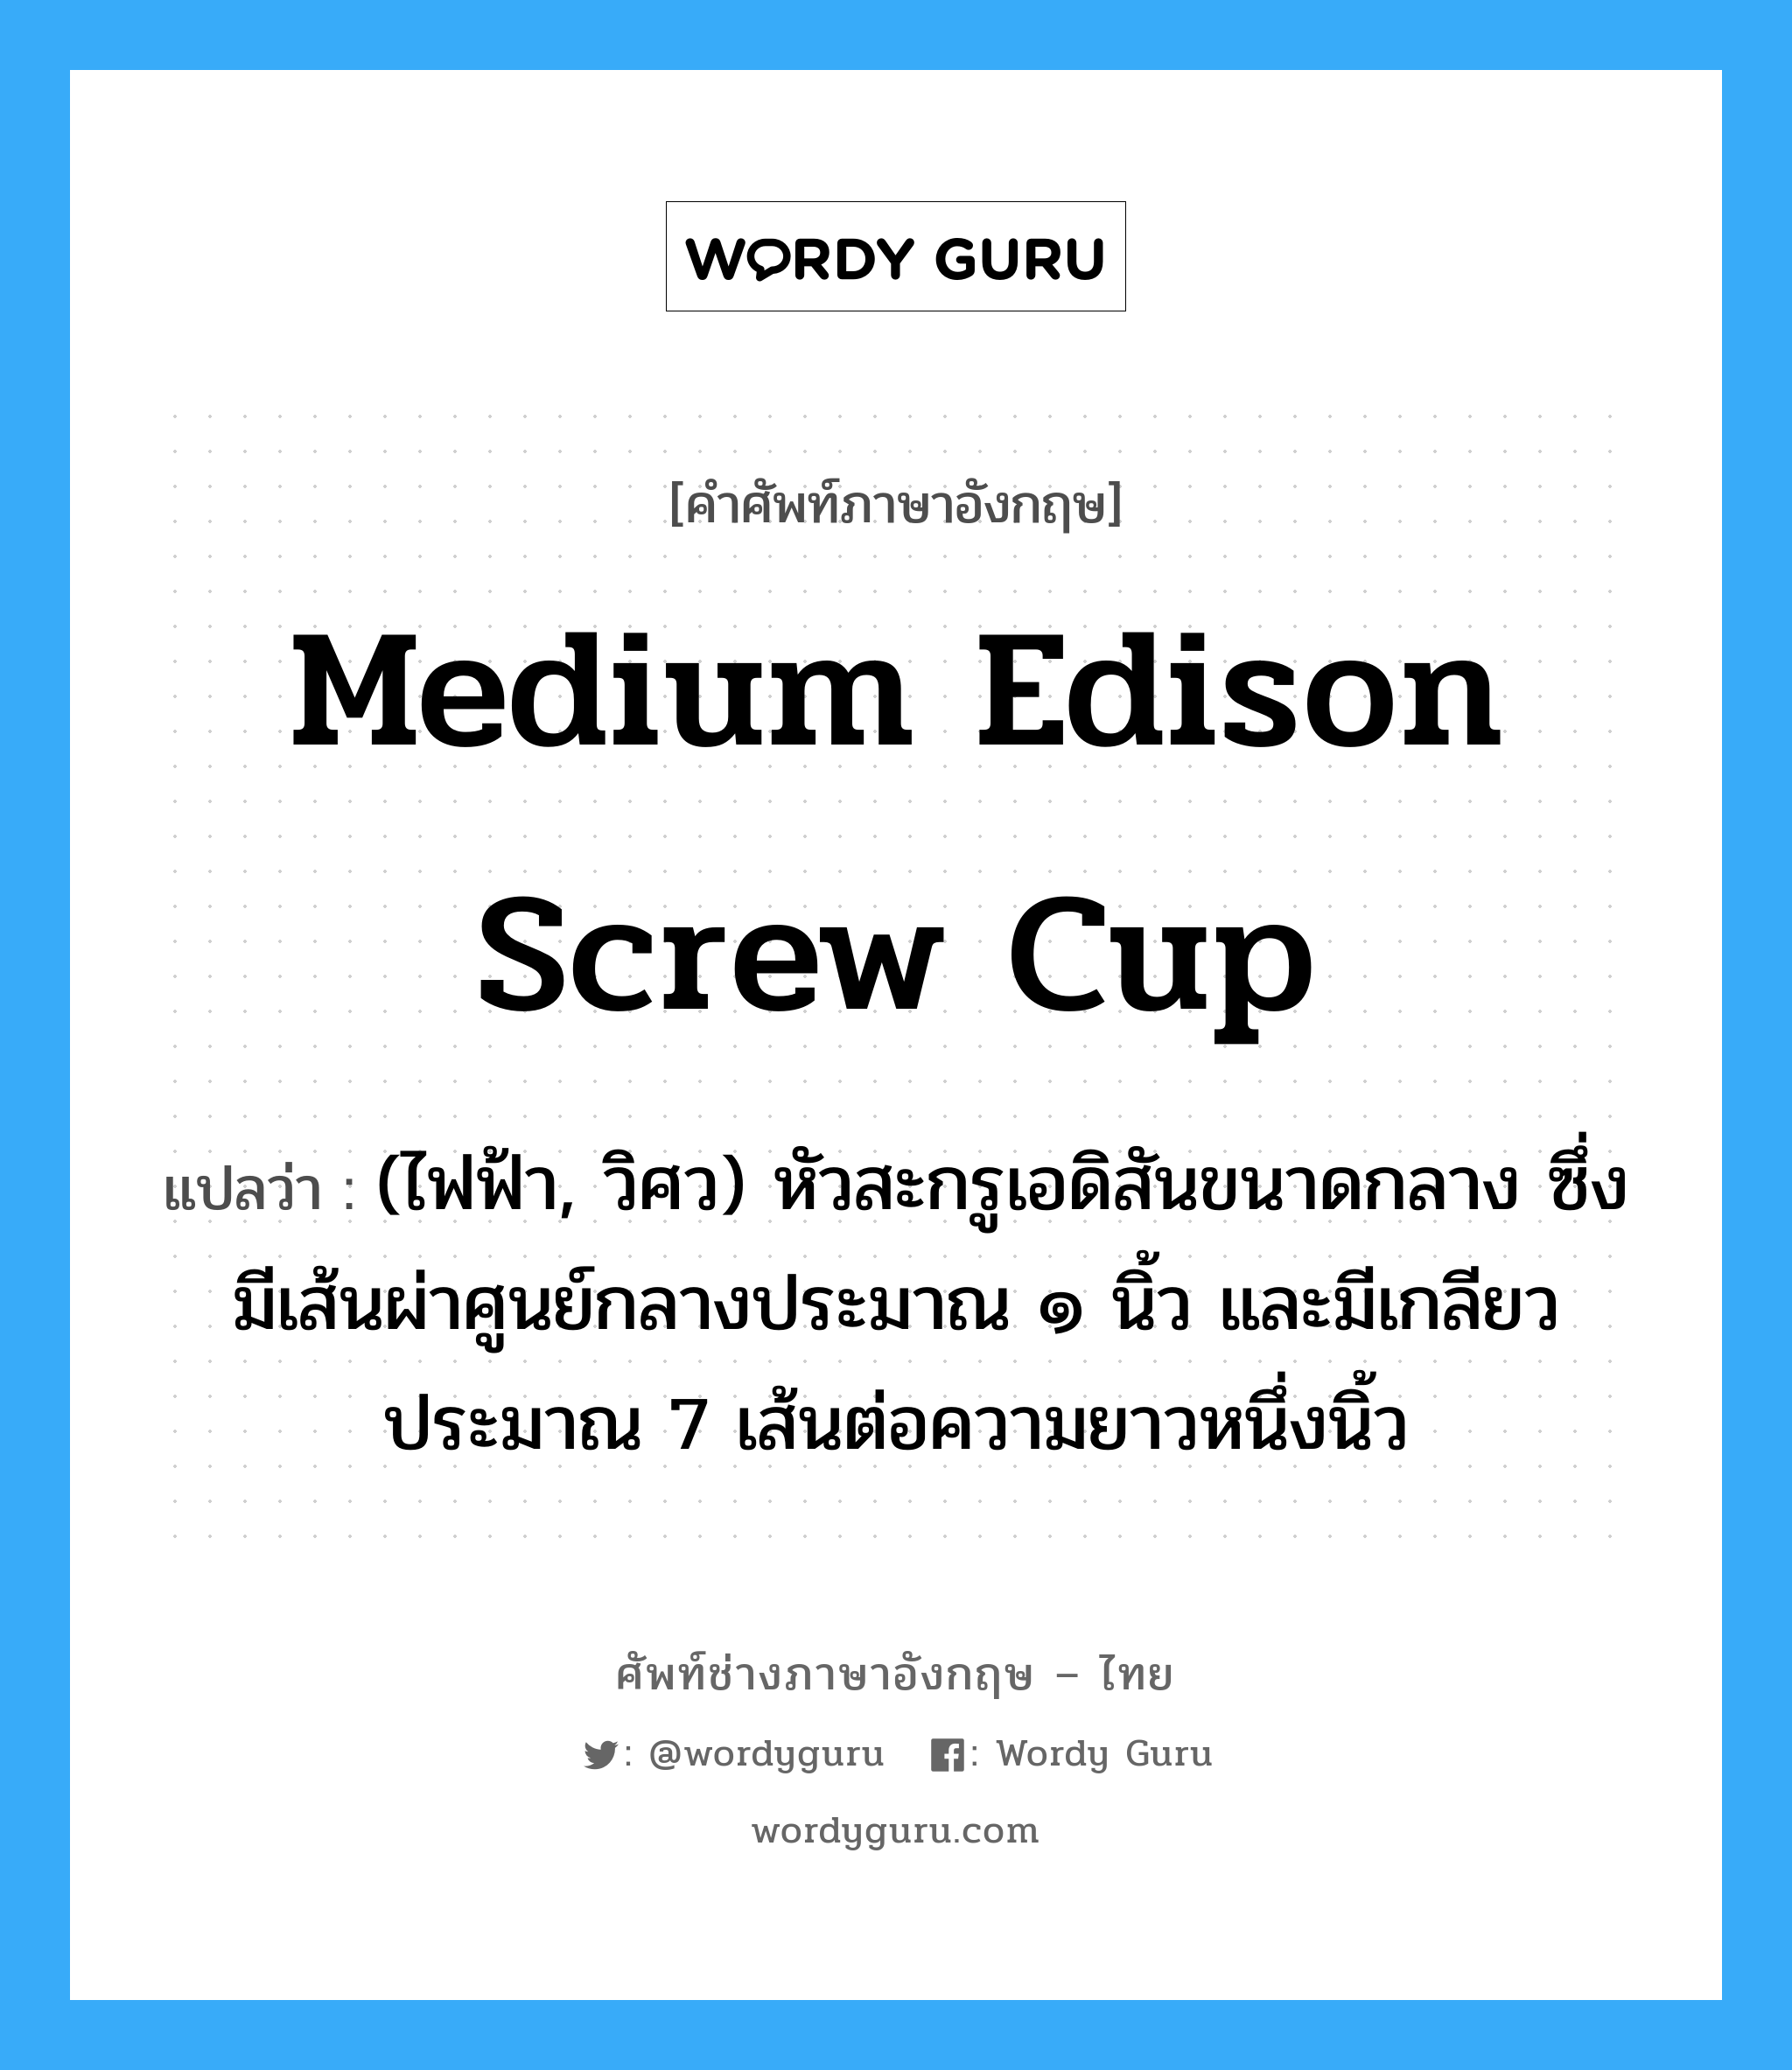 medium Edison screw cup แปลว่า?, คำศัพท์ช่างภาษาอังกฤษ - ไทย medium Edison screw cup คำศัพท์ภาษาอังกฤษ medium Edison screw cup แปลว่า (ไฟฟ้า, วิศว) หัวสะกรูเอดิสันขนาดกลาง ซึ่งมีเส้นผ่าศูนย์กลางประมาณ ๑ นิ้ว และมีเกลียวประมาณ 7 เส้นต่อความยาวหนึ่งนิ้ว